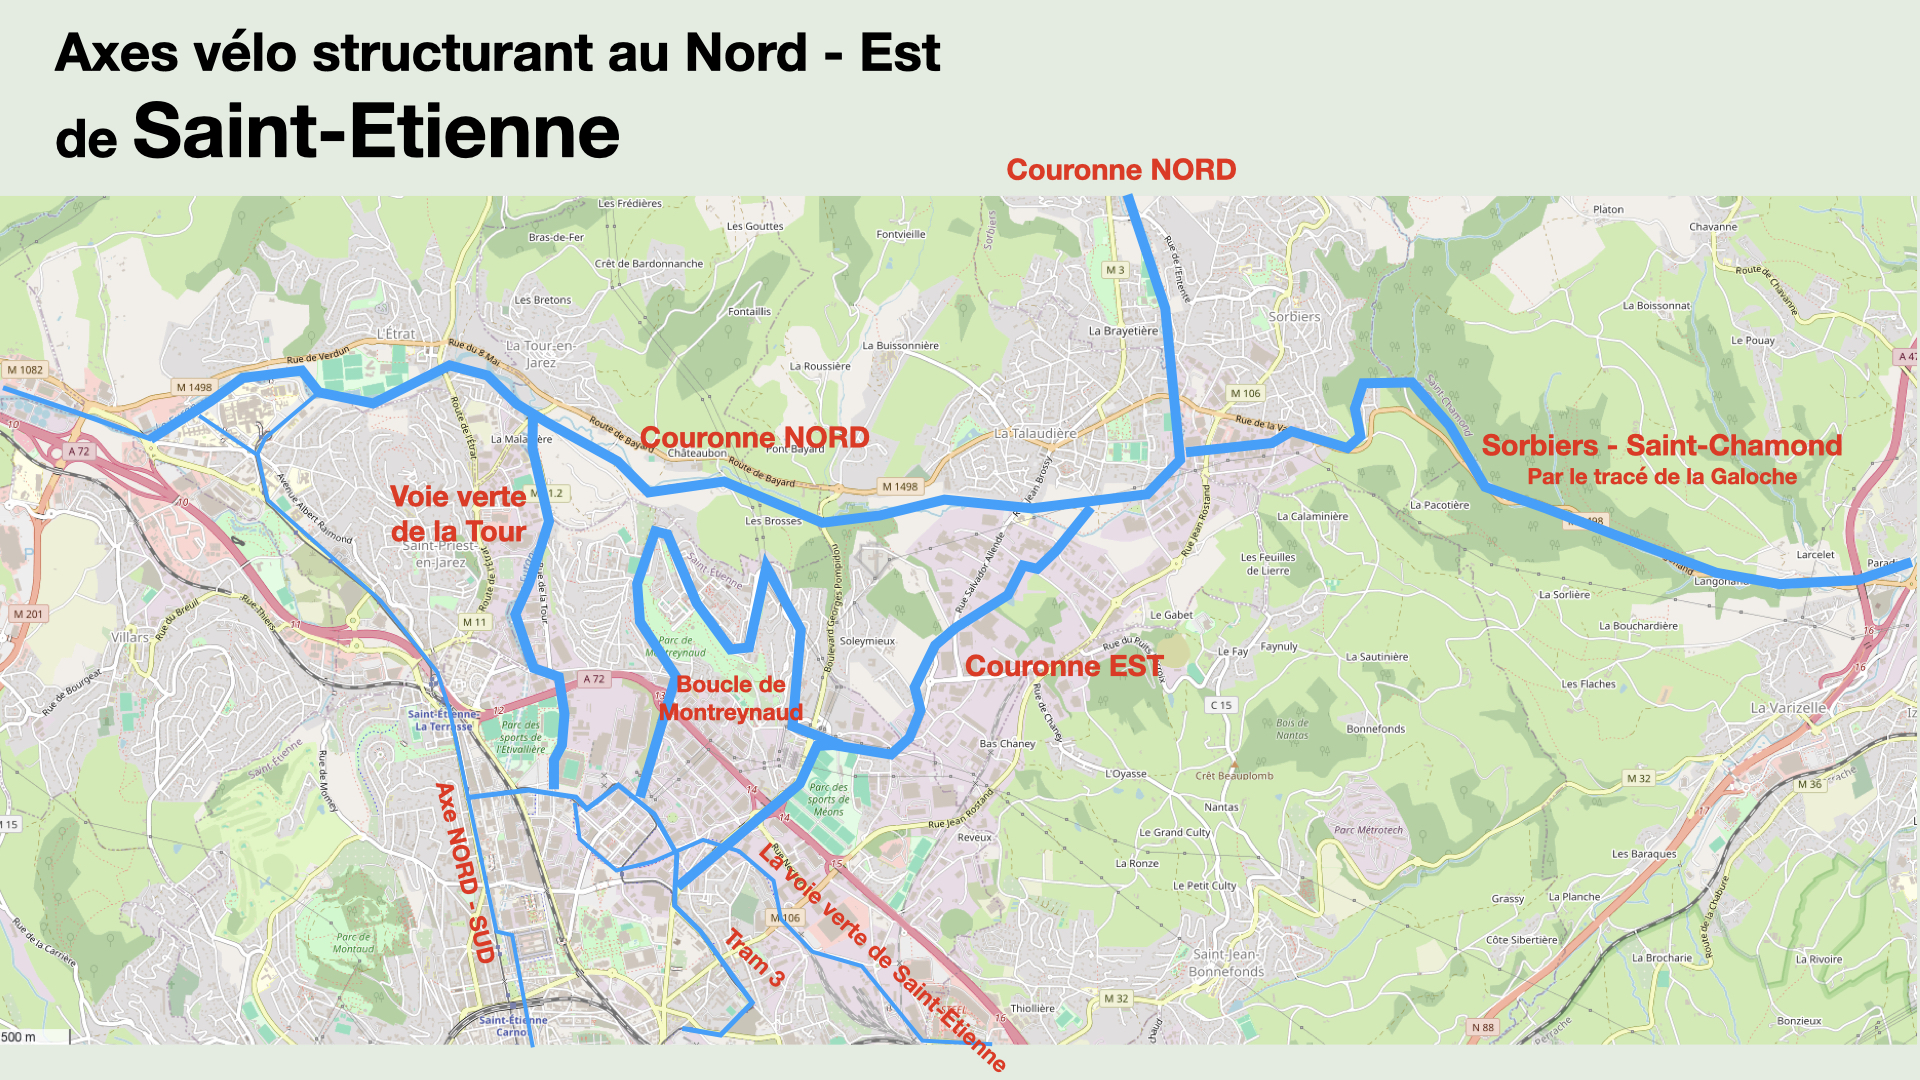 Nord est de saint etienne plan vélo voie verte Sorbier Saint-Chamond Talaudiere la tour en jarez Etrat Couronne Nord couronne Est CHU Nord axe cyclable voie verte 